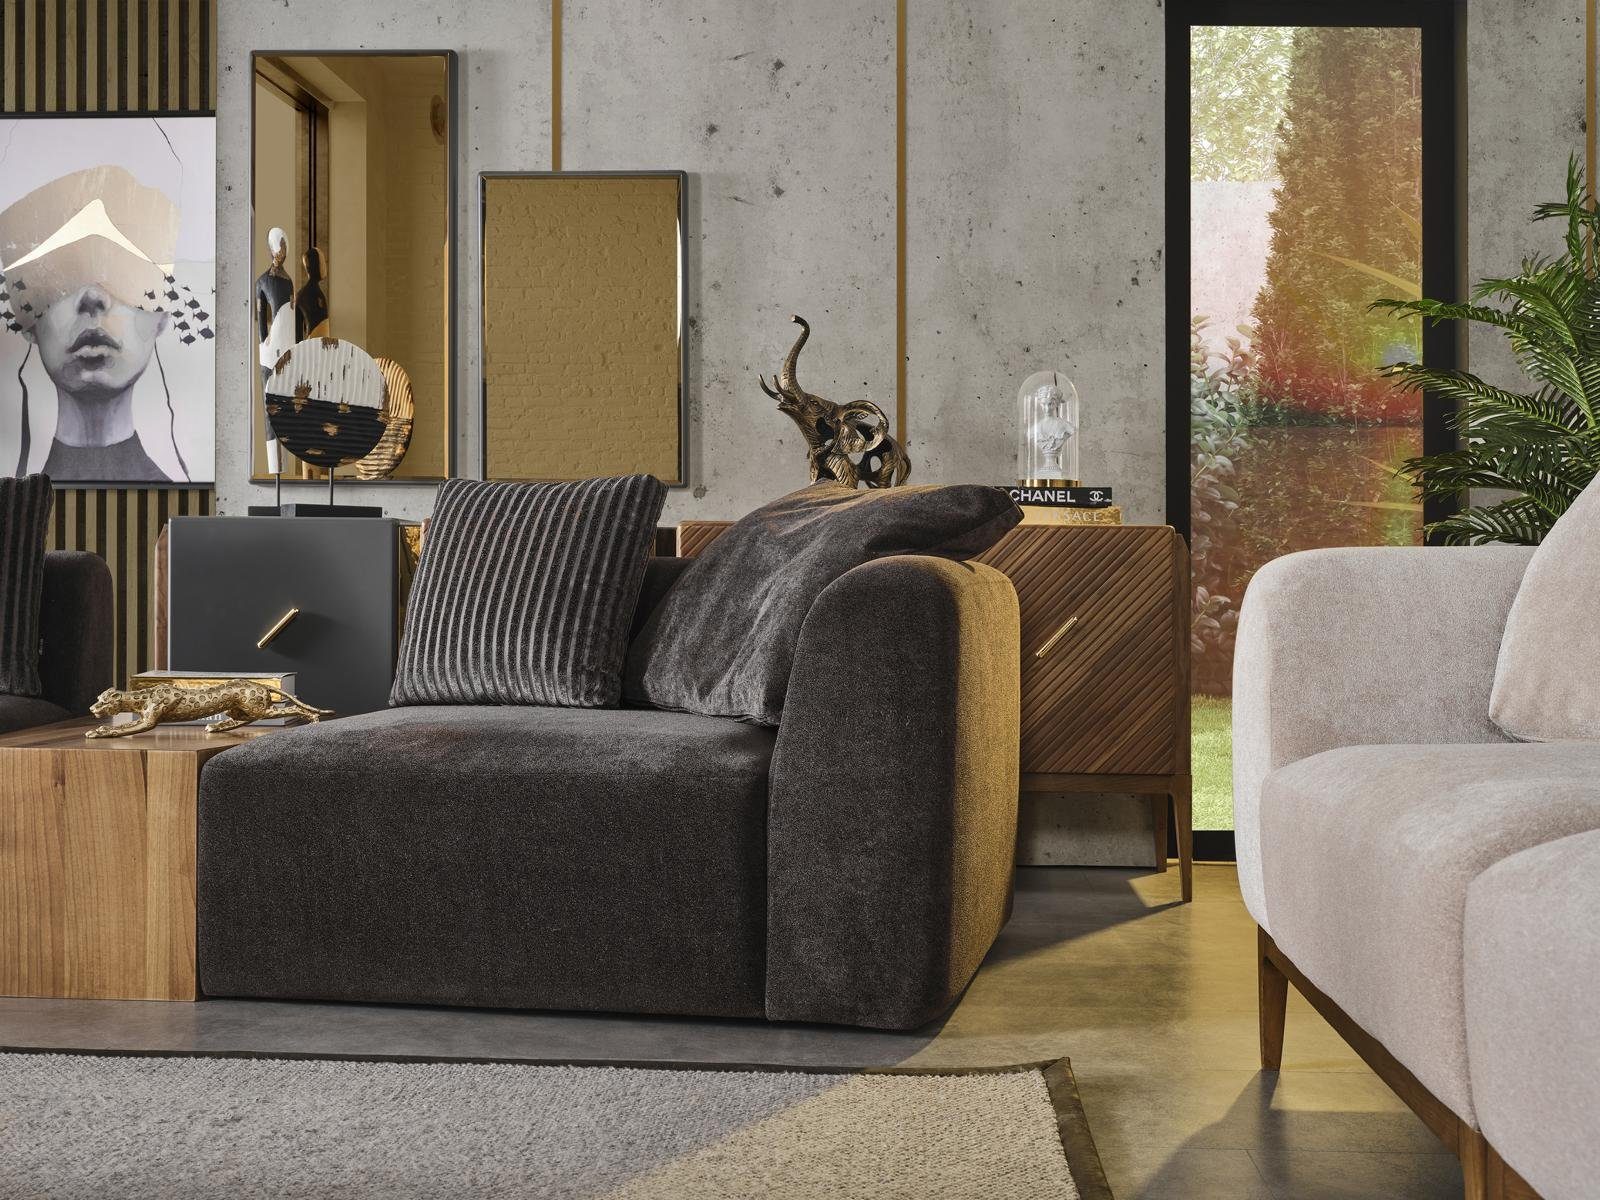 JVmoebel 3-Sitzer Sofa 3 Sitzer Wohnzimmer Möbel Textil Sofas grau Polster Neu Modern